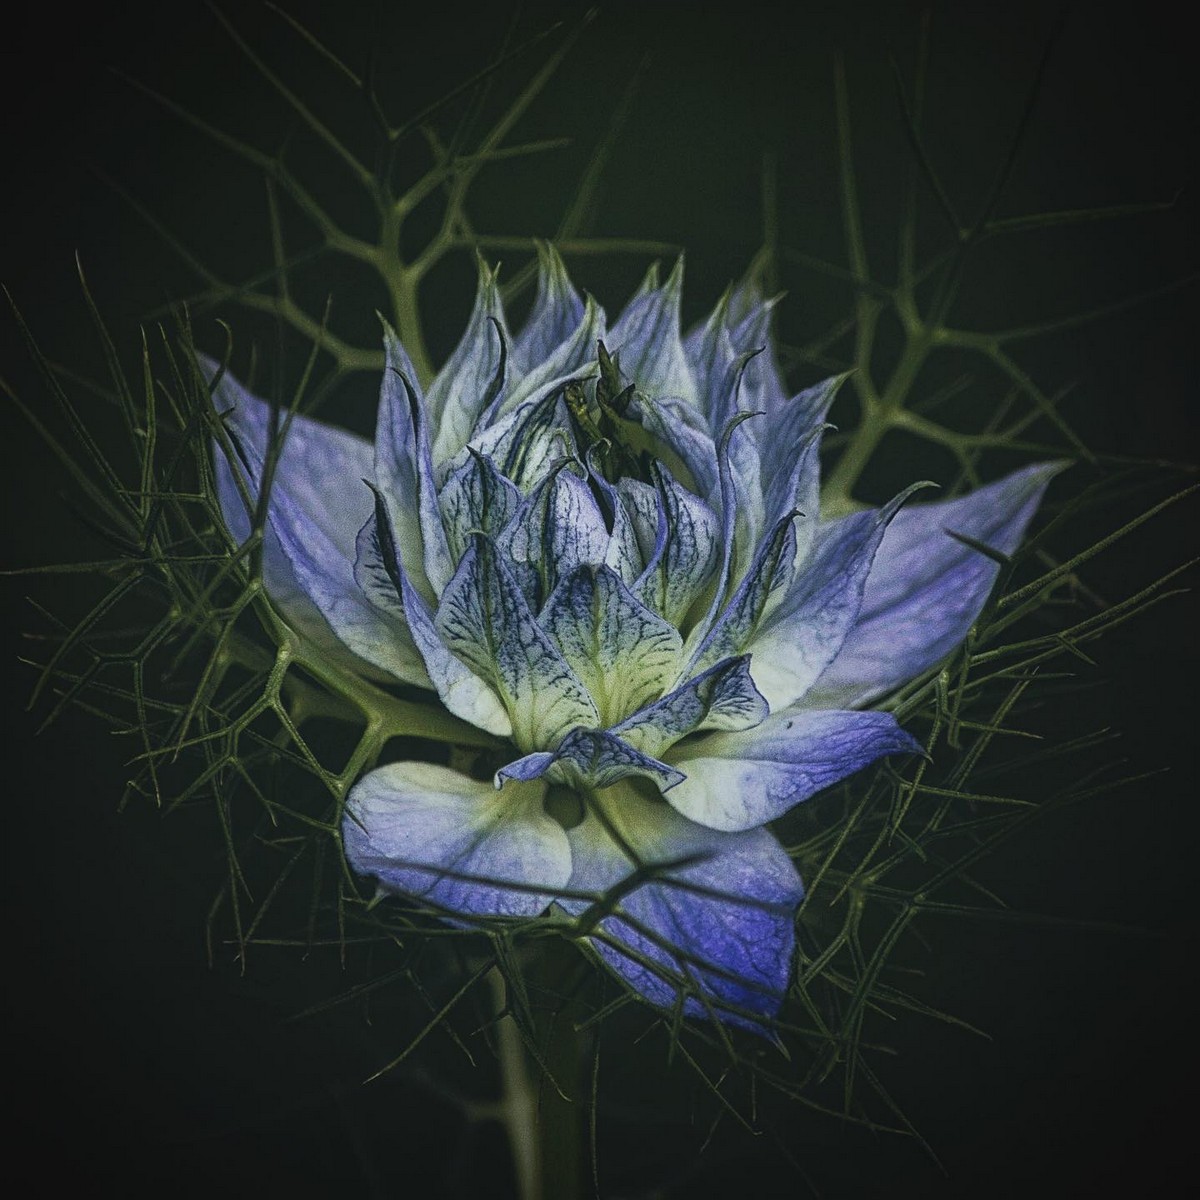 Красивые цветы крупным планом на снимках Энн Венер